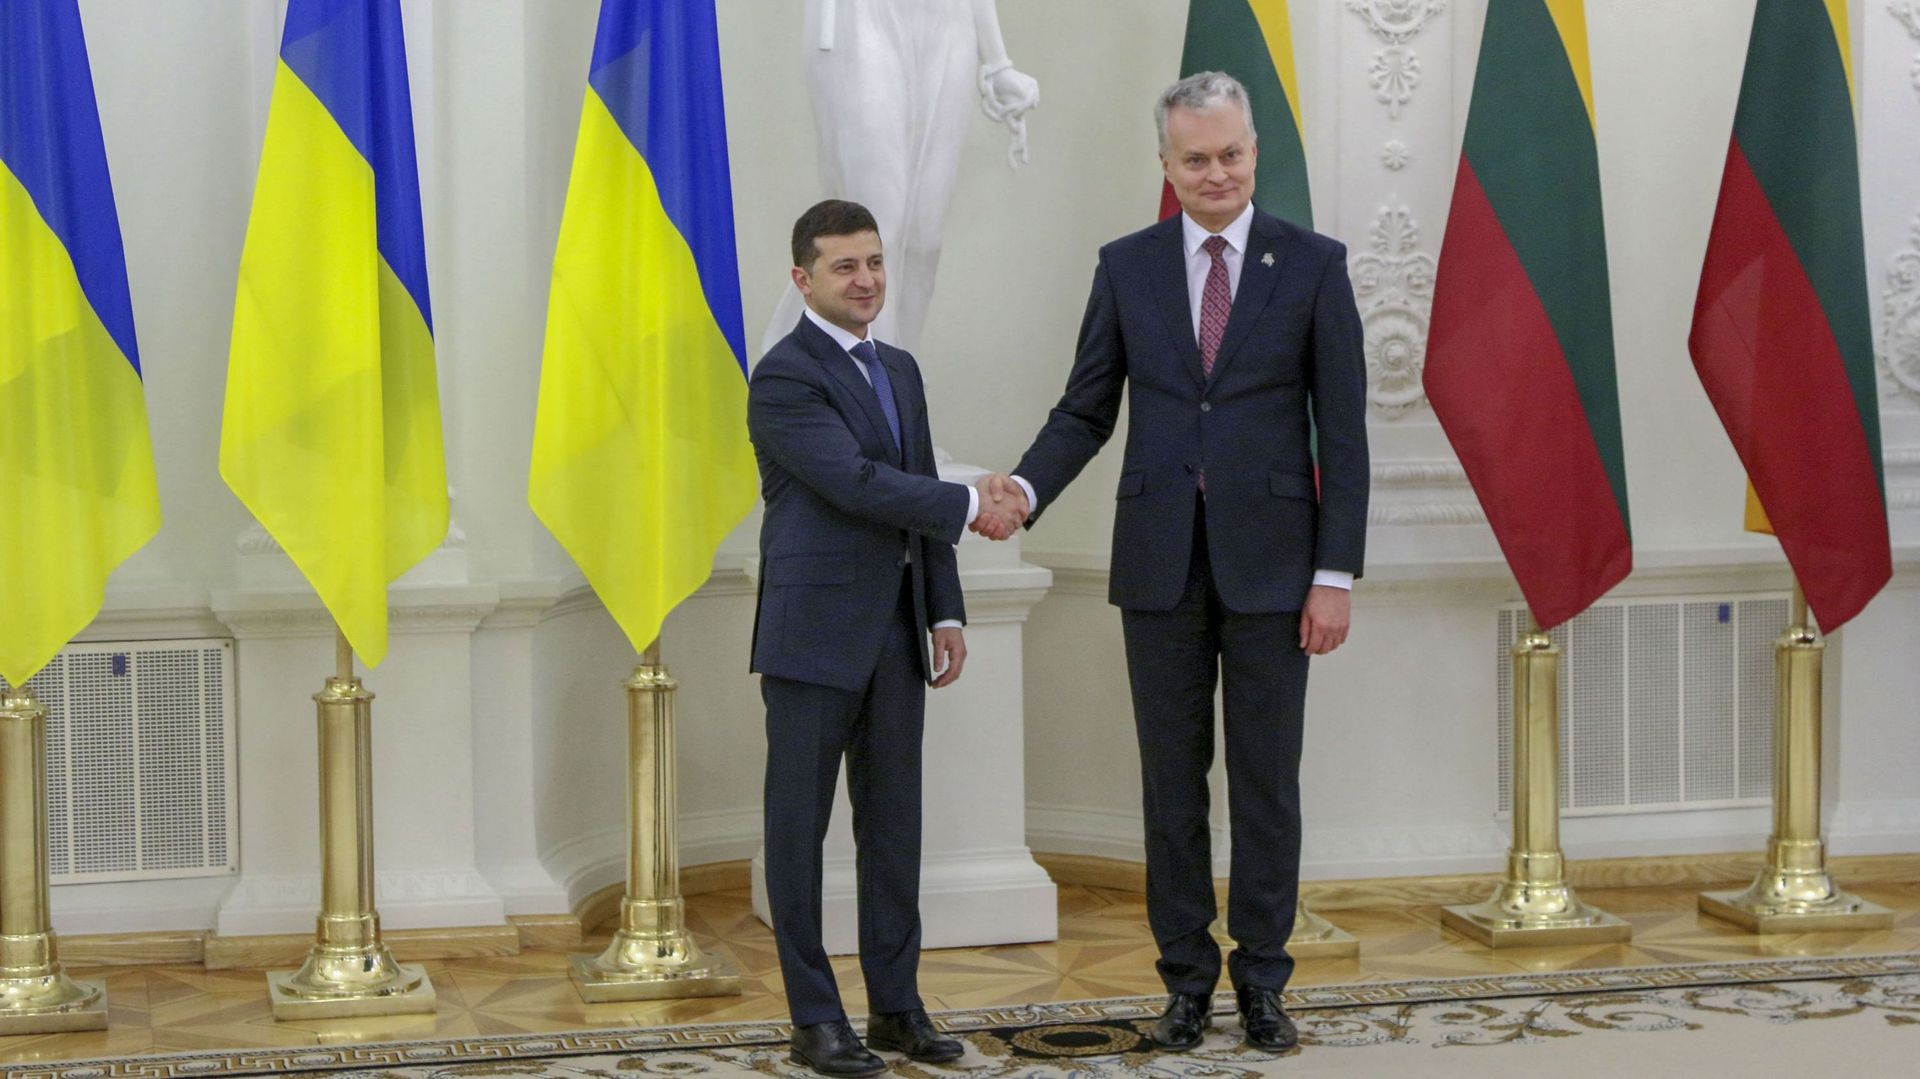 Président ukrainien Volodymyr Zelensky (à gauche) et le président lituanien Gitanas Nauseda (à droite)